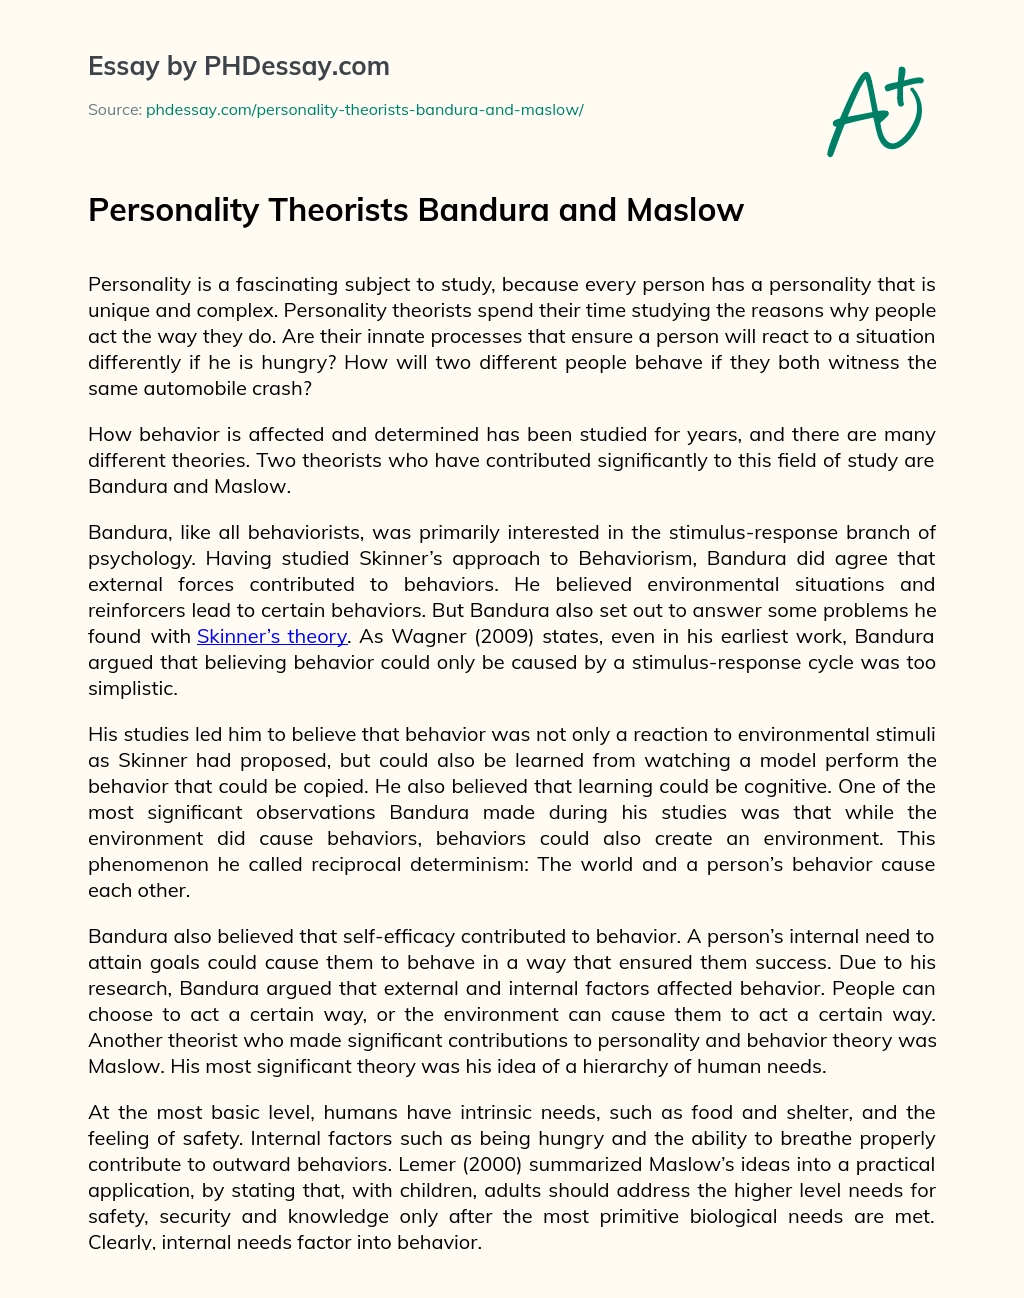 Personality Theorists Bandura and Maslow essay